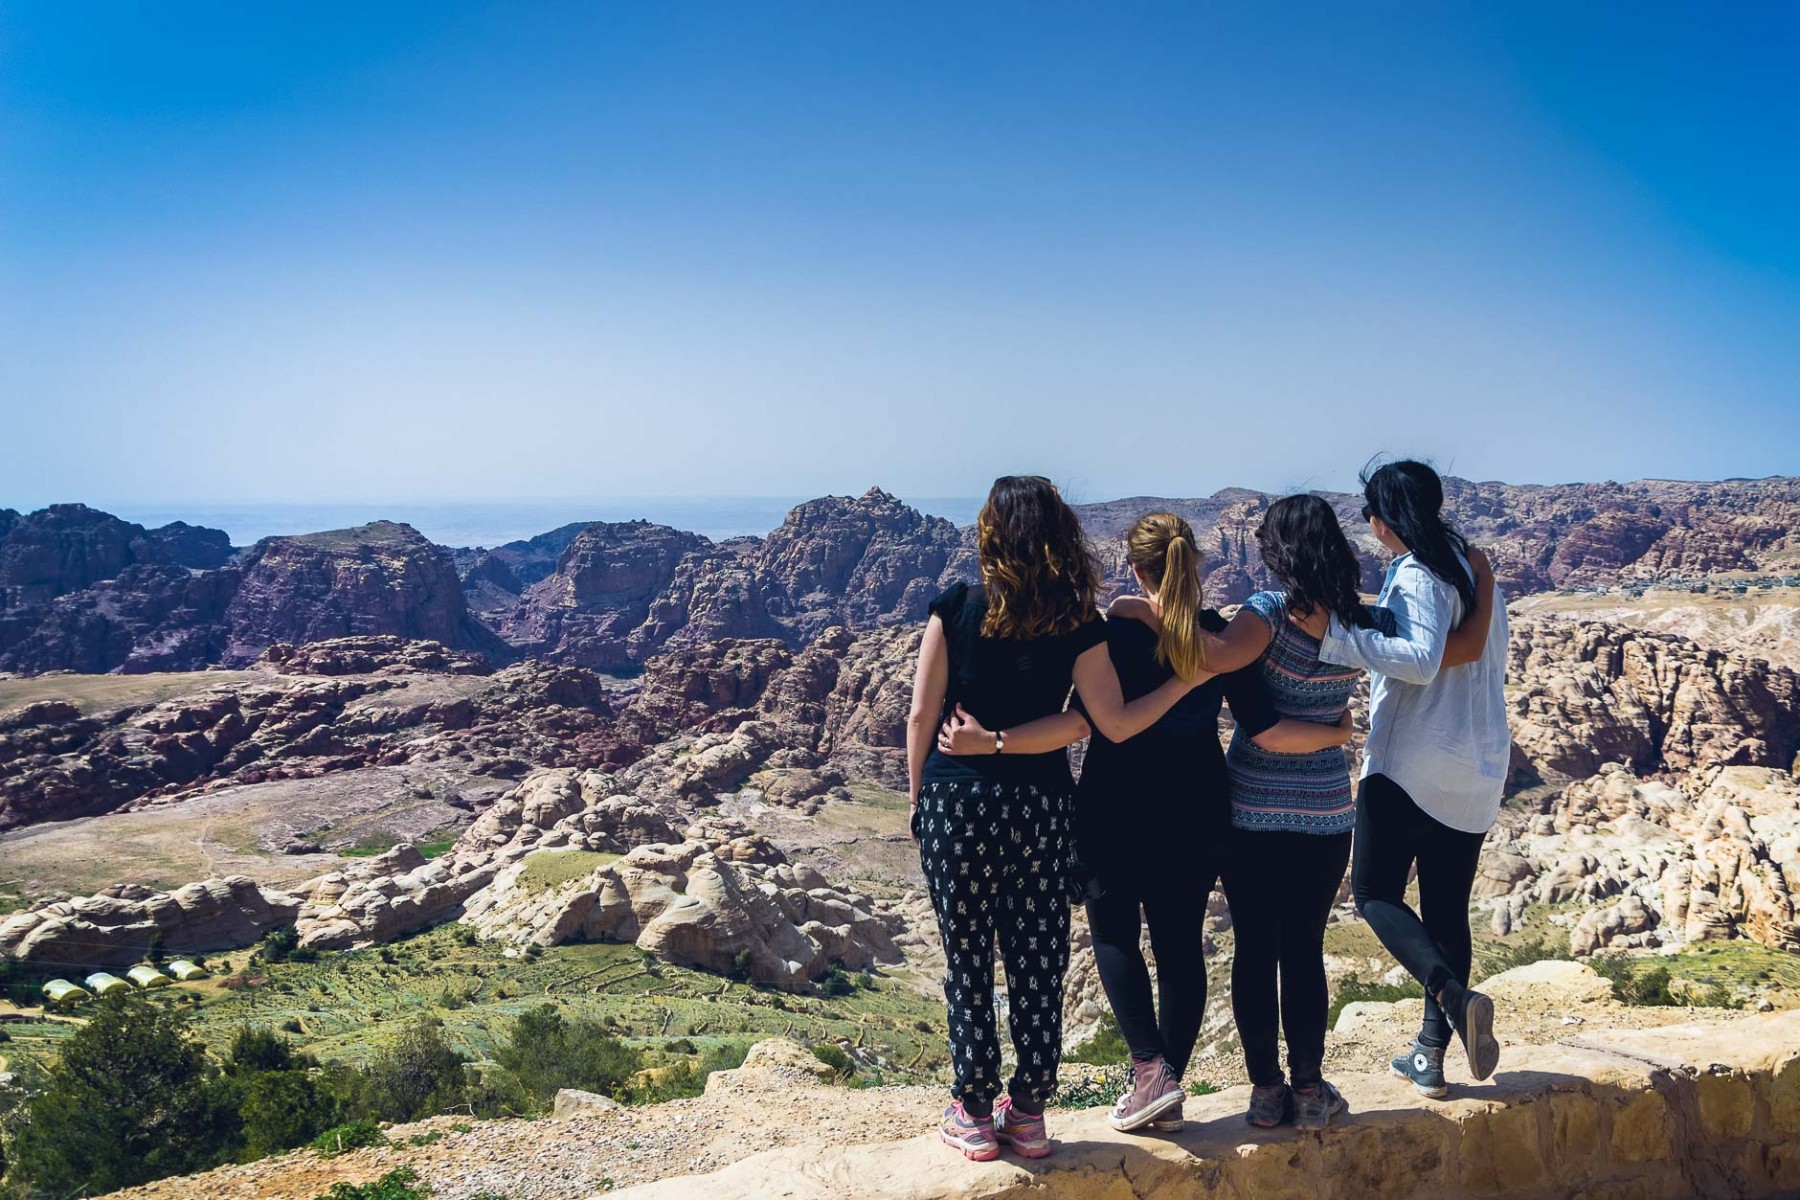 #GirlsGoneJordan near Petra, Jordan 